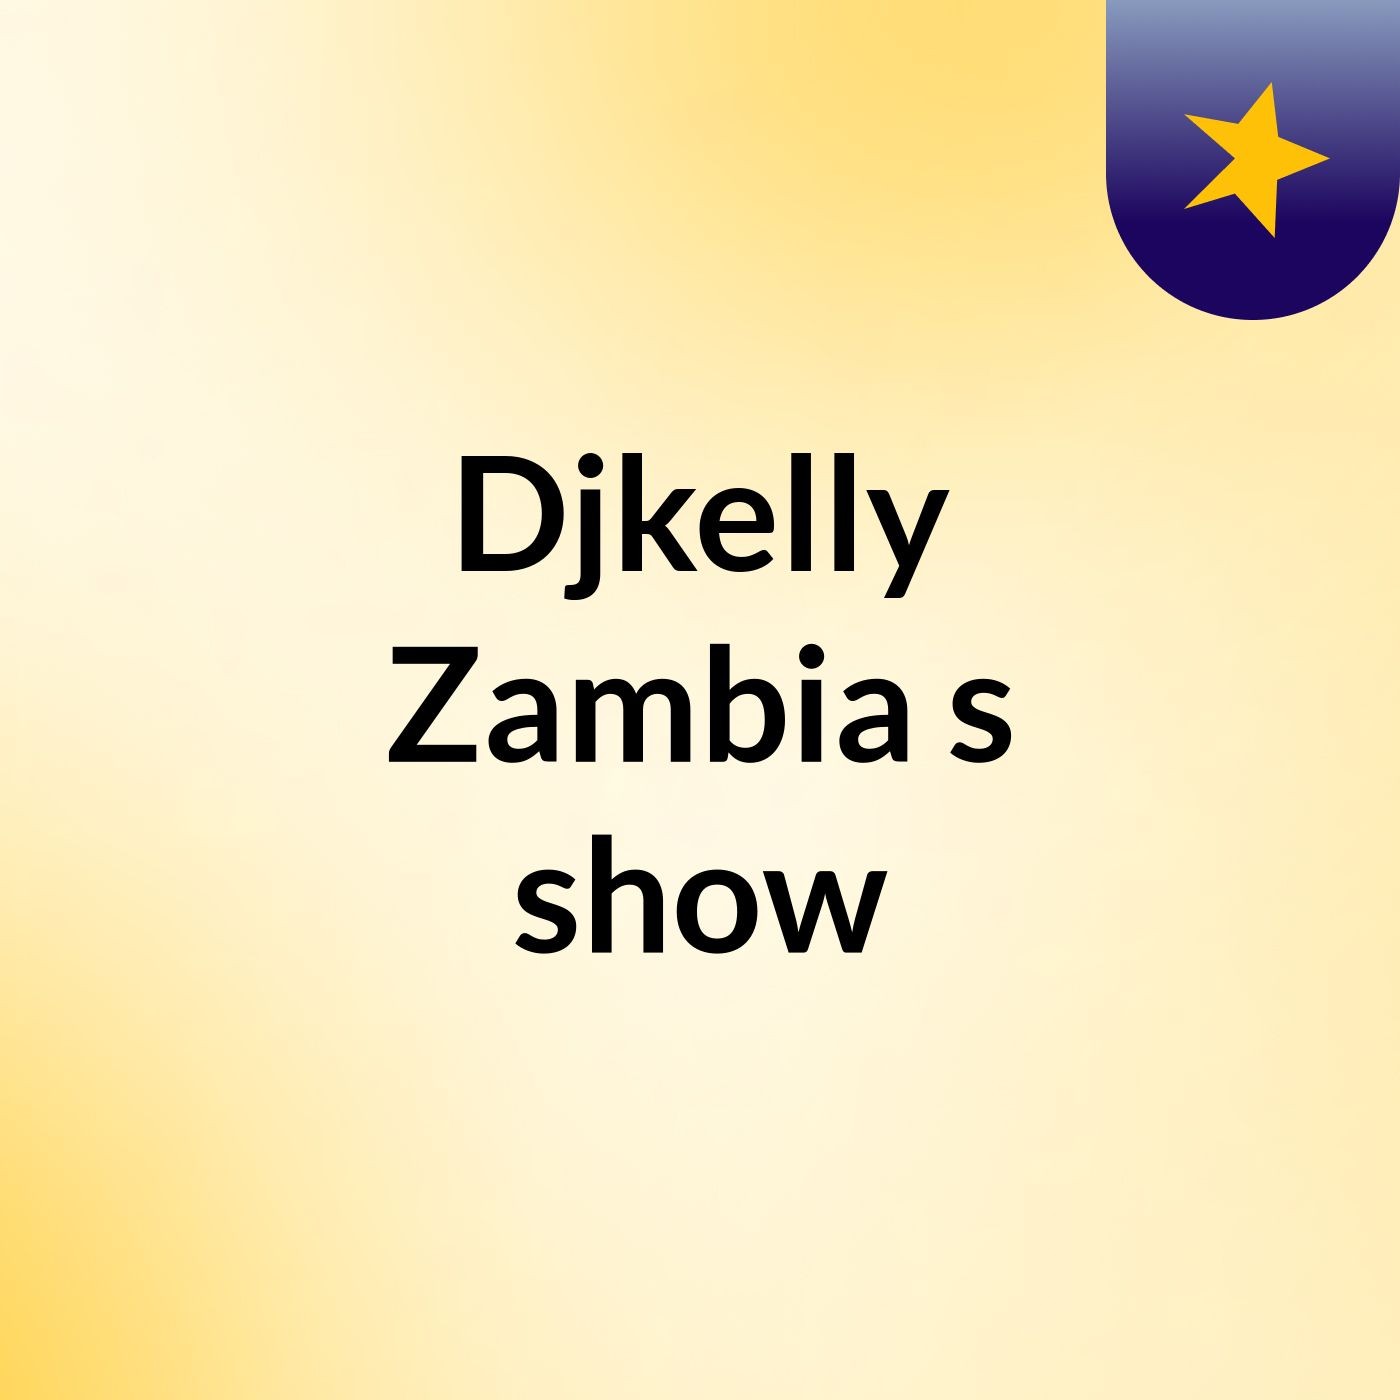 Djkelly Zambia's show